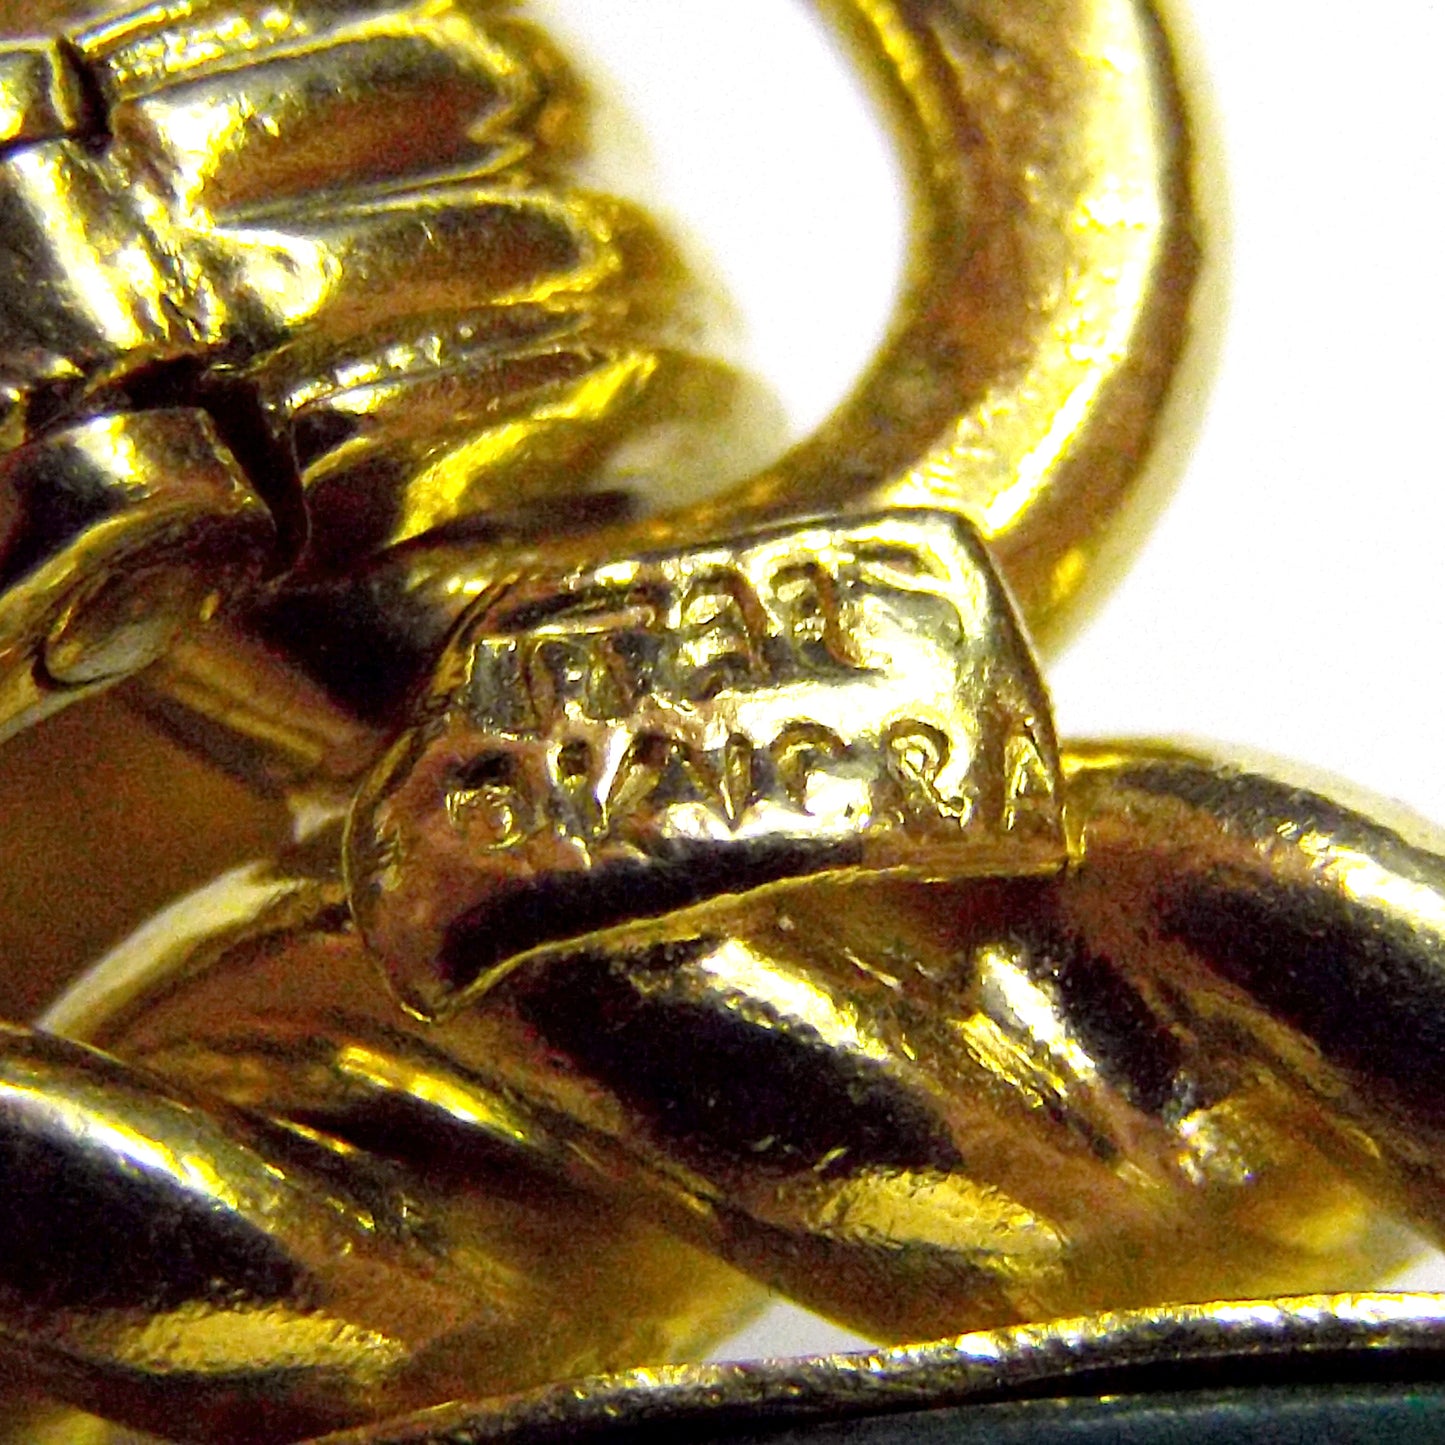 Van Cleef & Arpels Gold Malachite Gemini Pendant Necklace